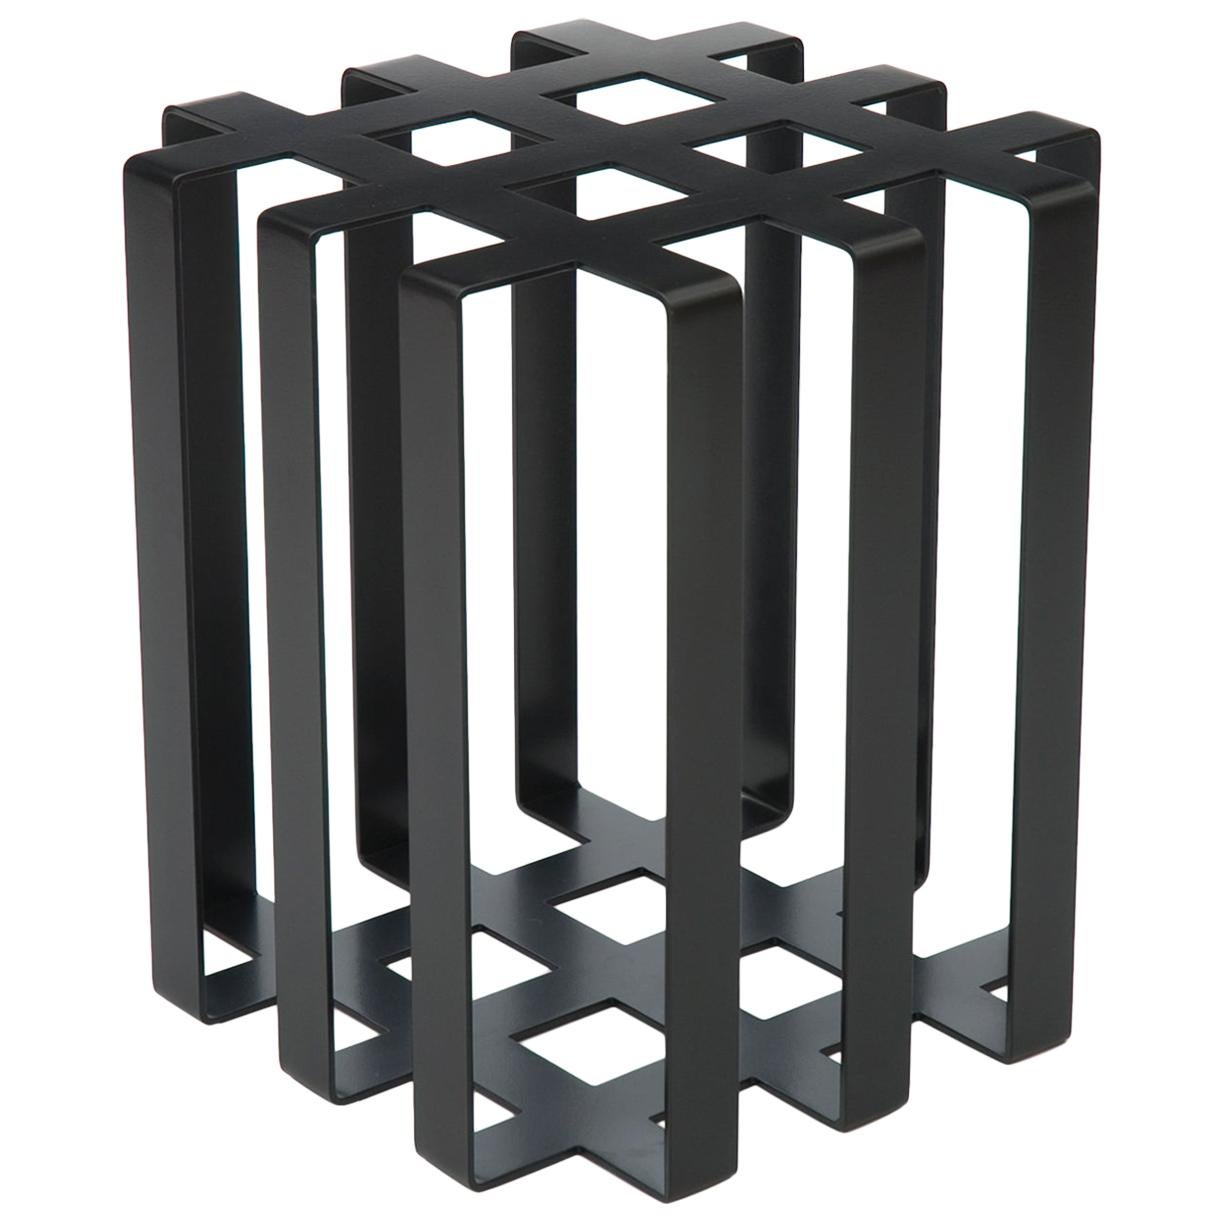 Table d'appoint/tabouret en béton sculptural moderne pour l'intérieur/extérieur, noir, en stock